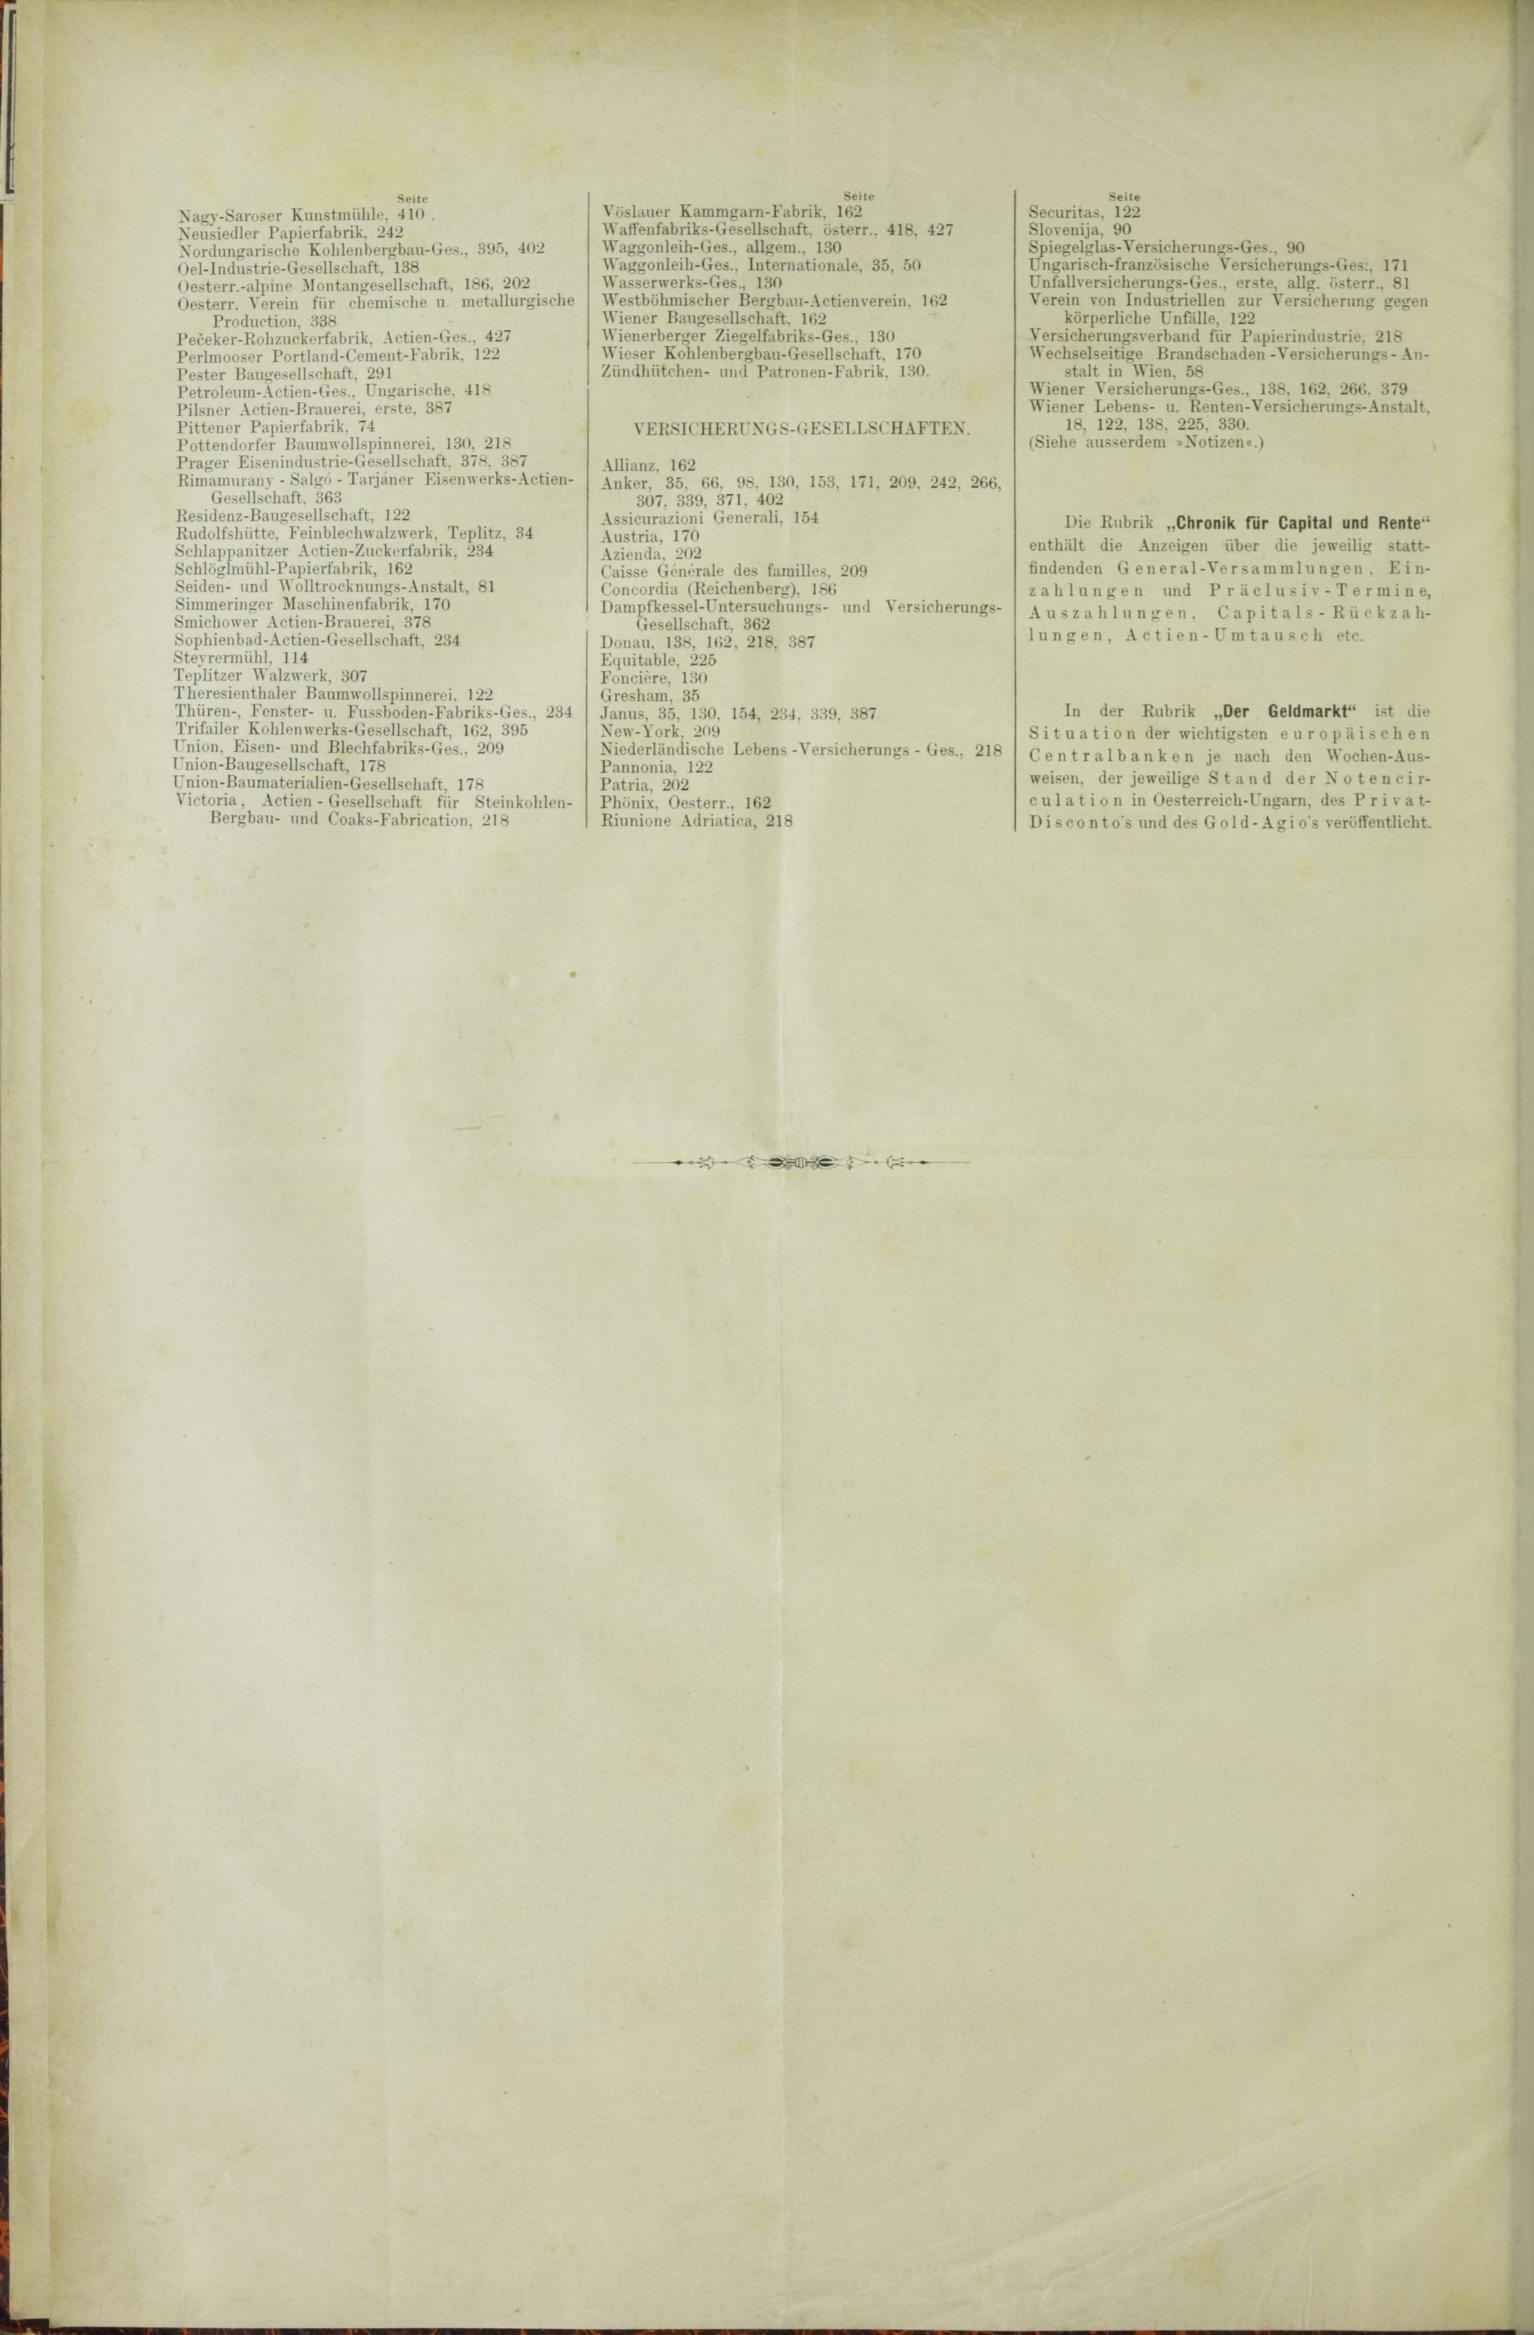 Der Tresor 06.08.1885 - Seite 10